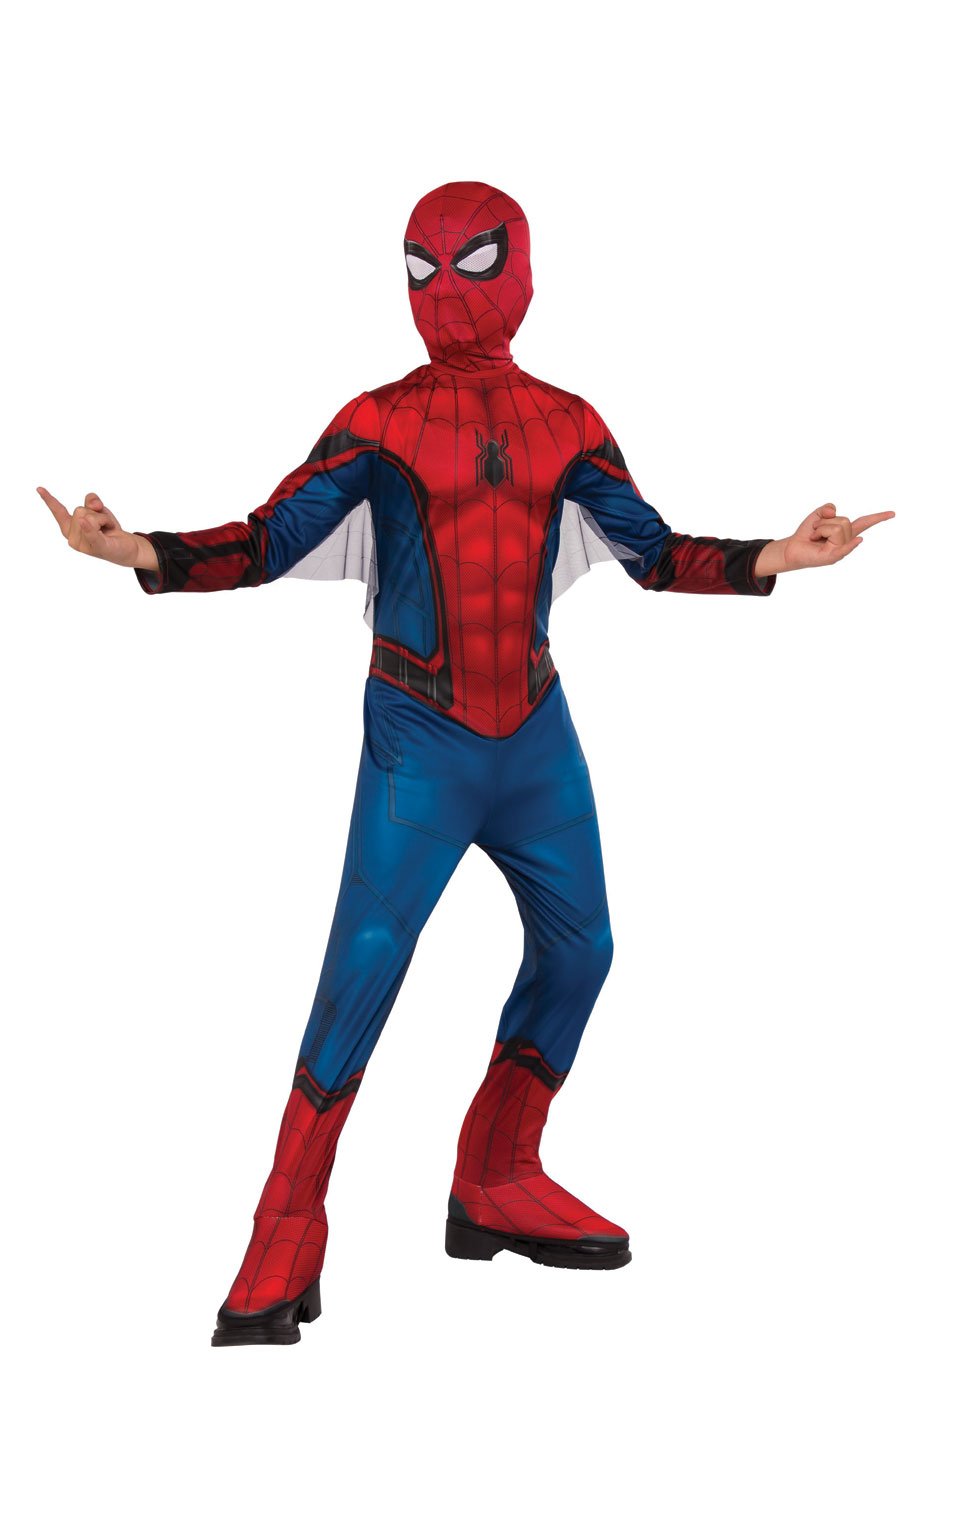 Rubie's Costume Spider-Man Homecoming Child's Costume, Multicolor, Medium